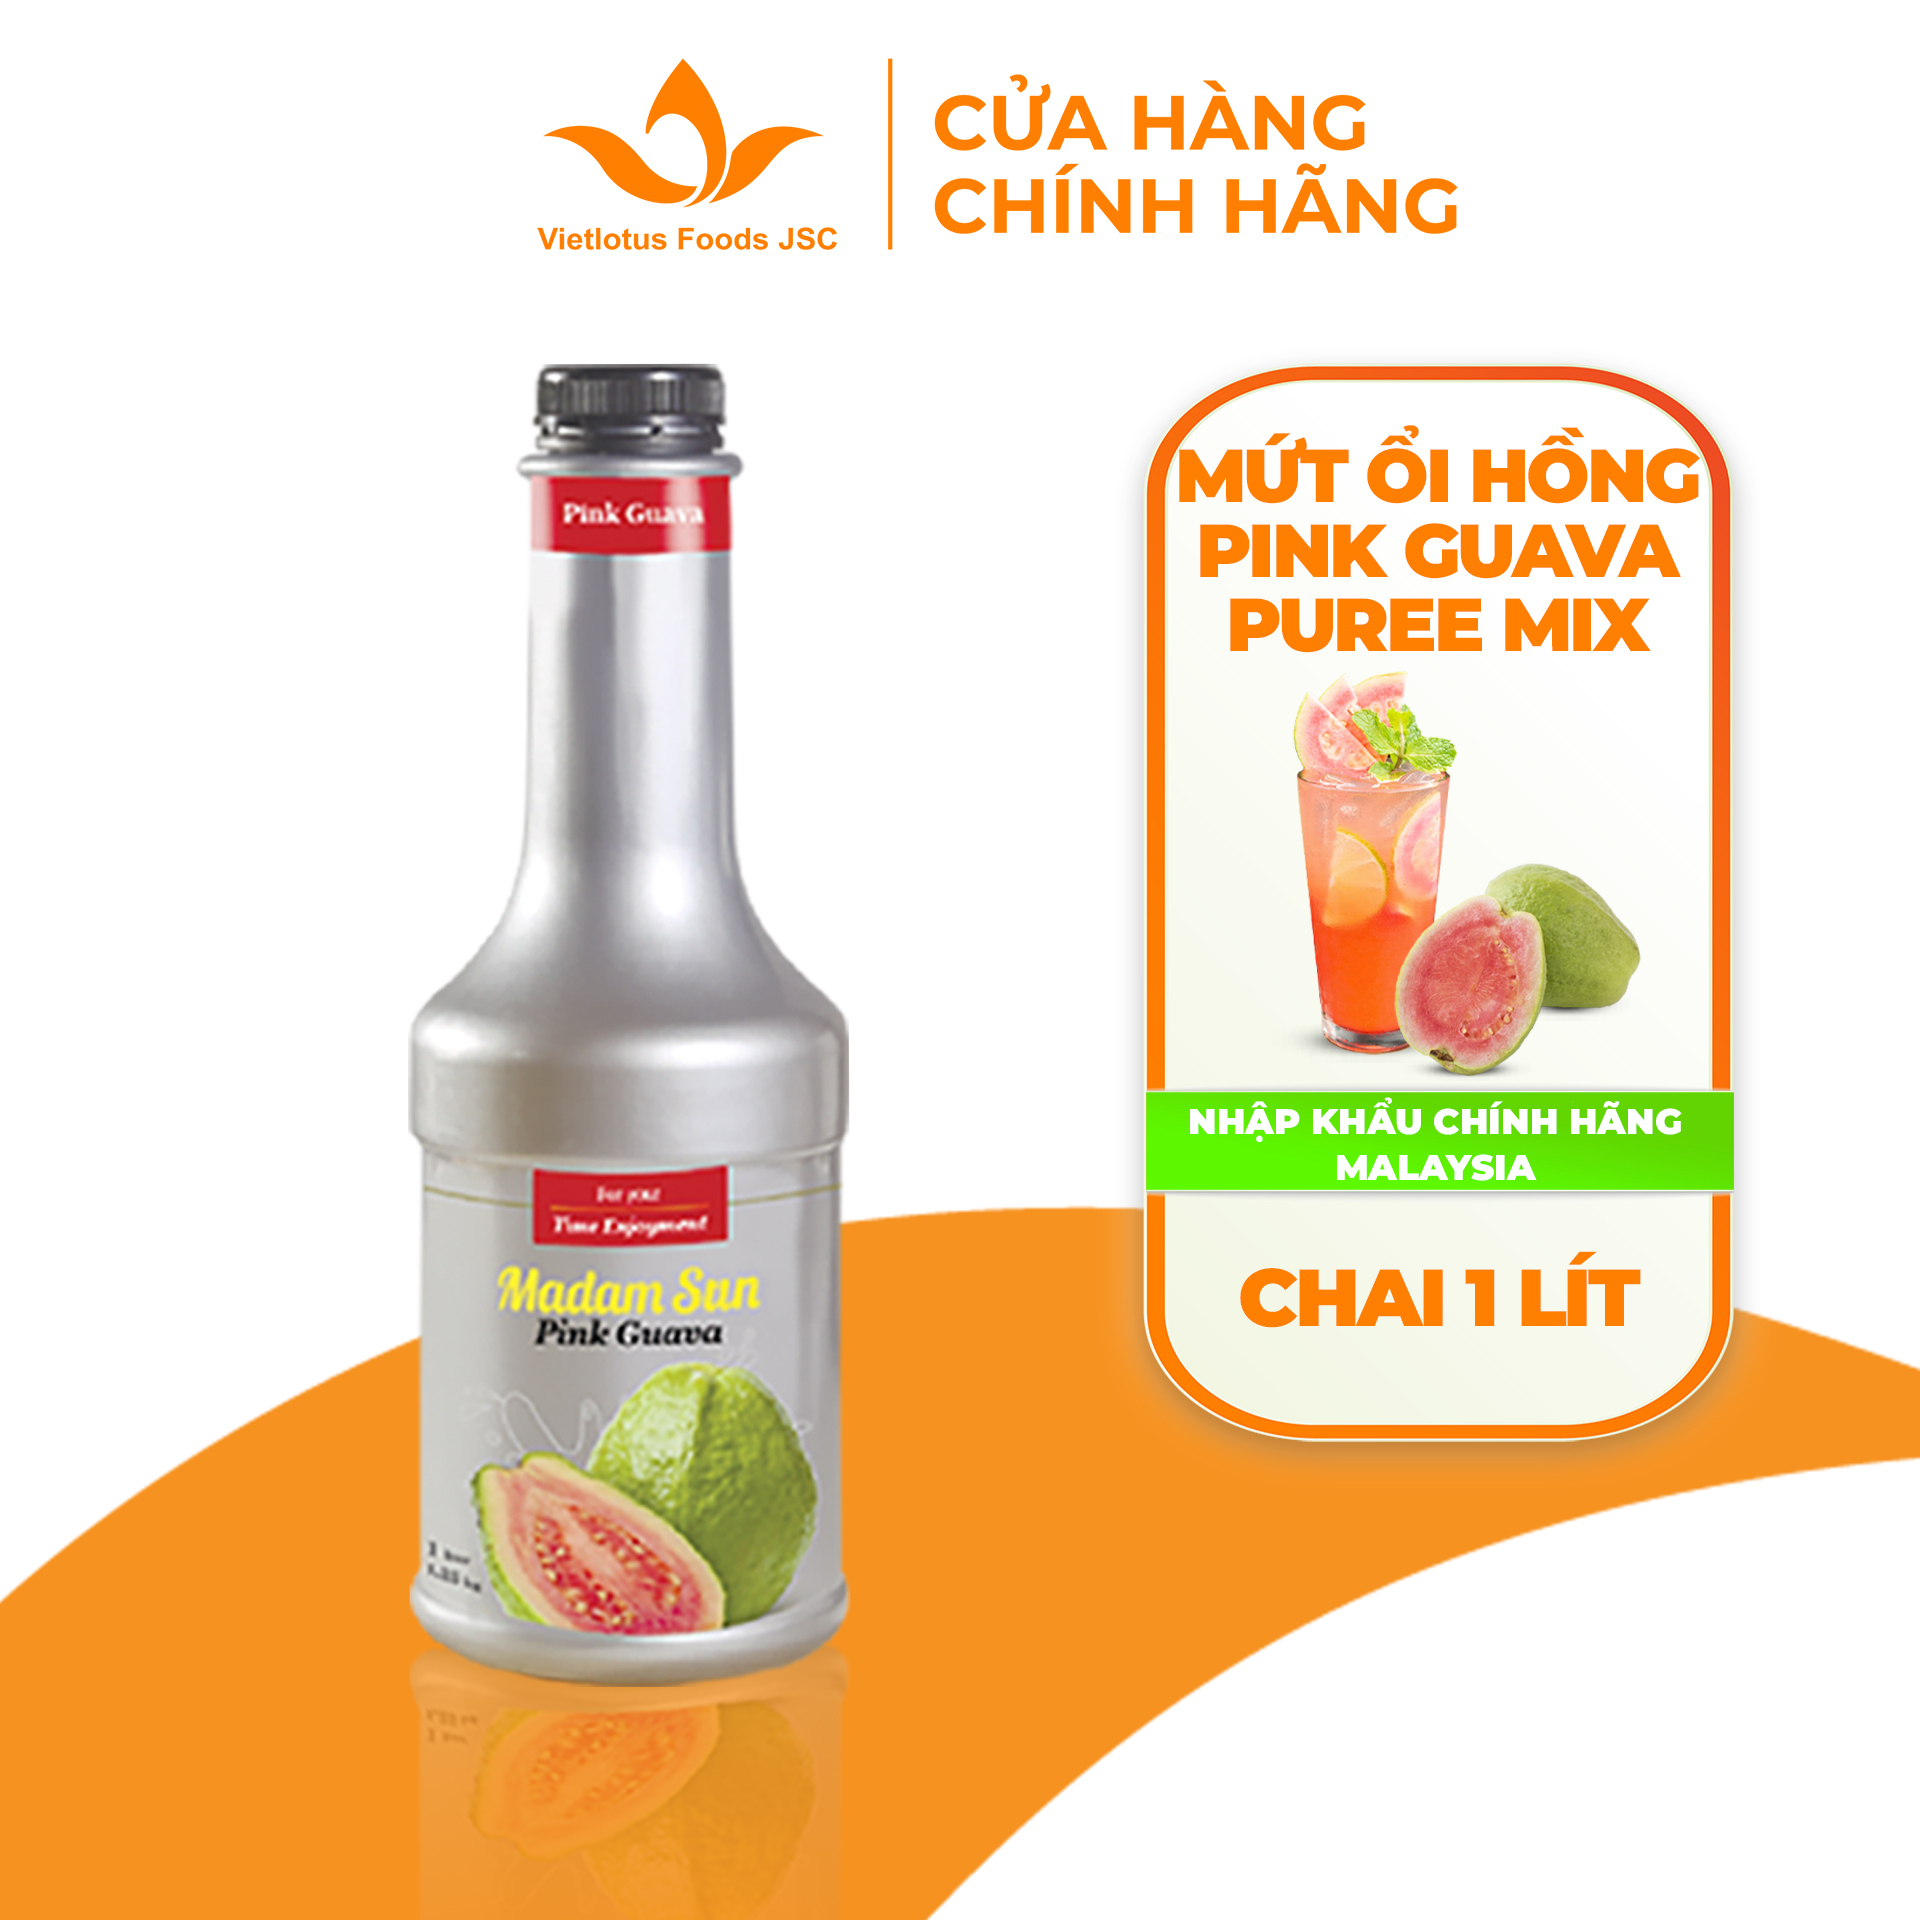 Mứt trái cây pha chế Madamsun vị Ổi Hồng (Pink Guava Puree Mix) chai 1L - Hàng nhập khẩu Malaysia